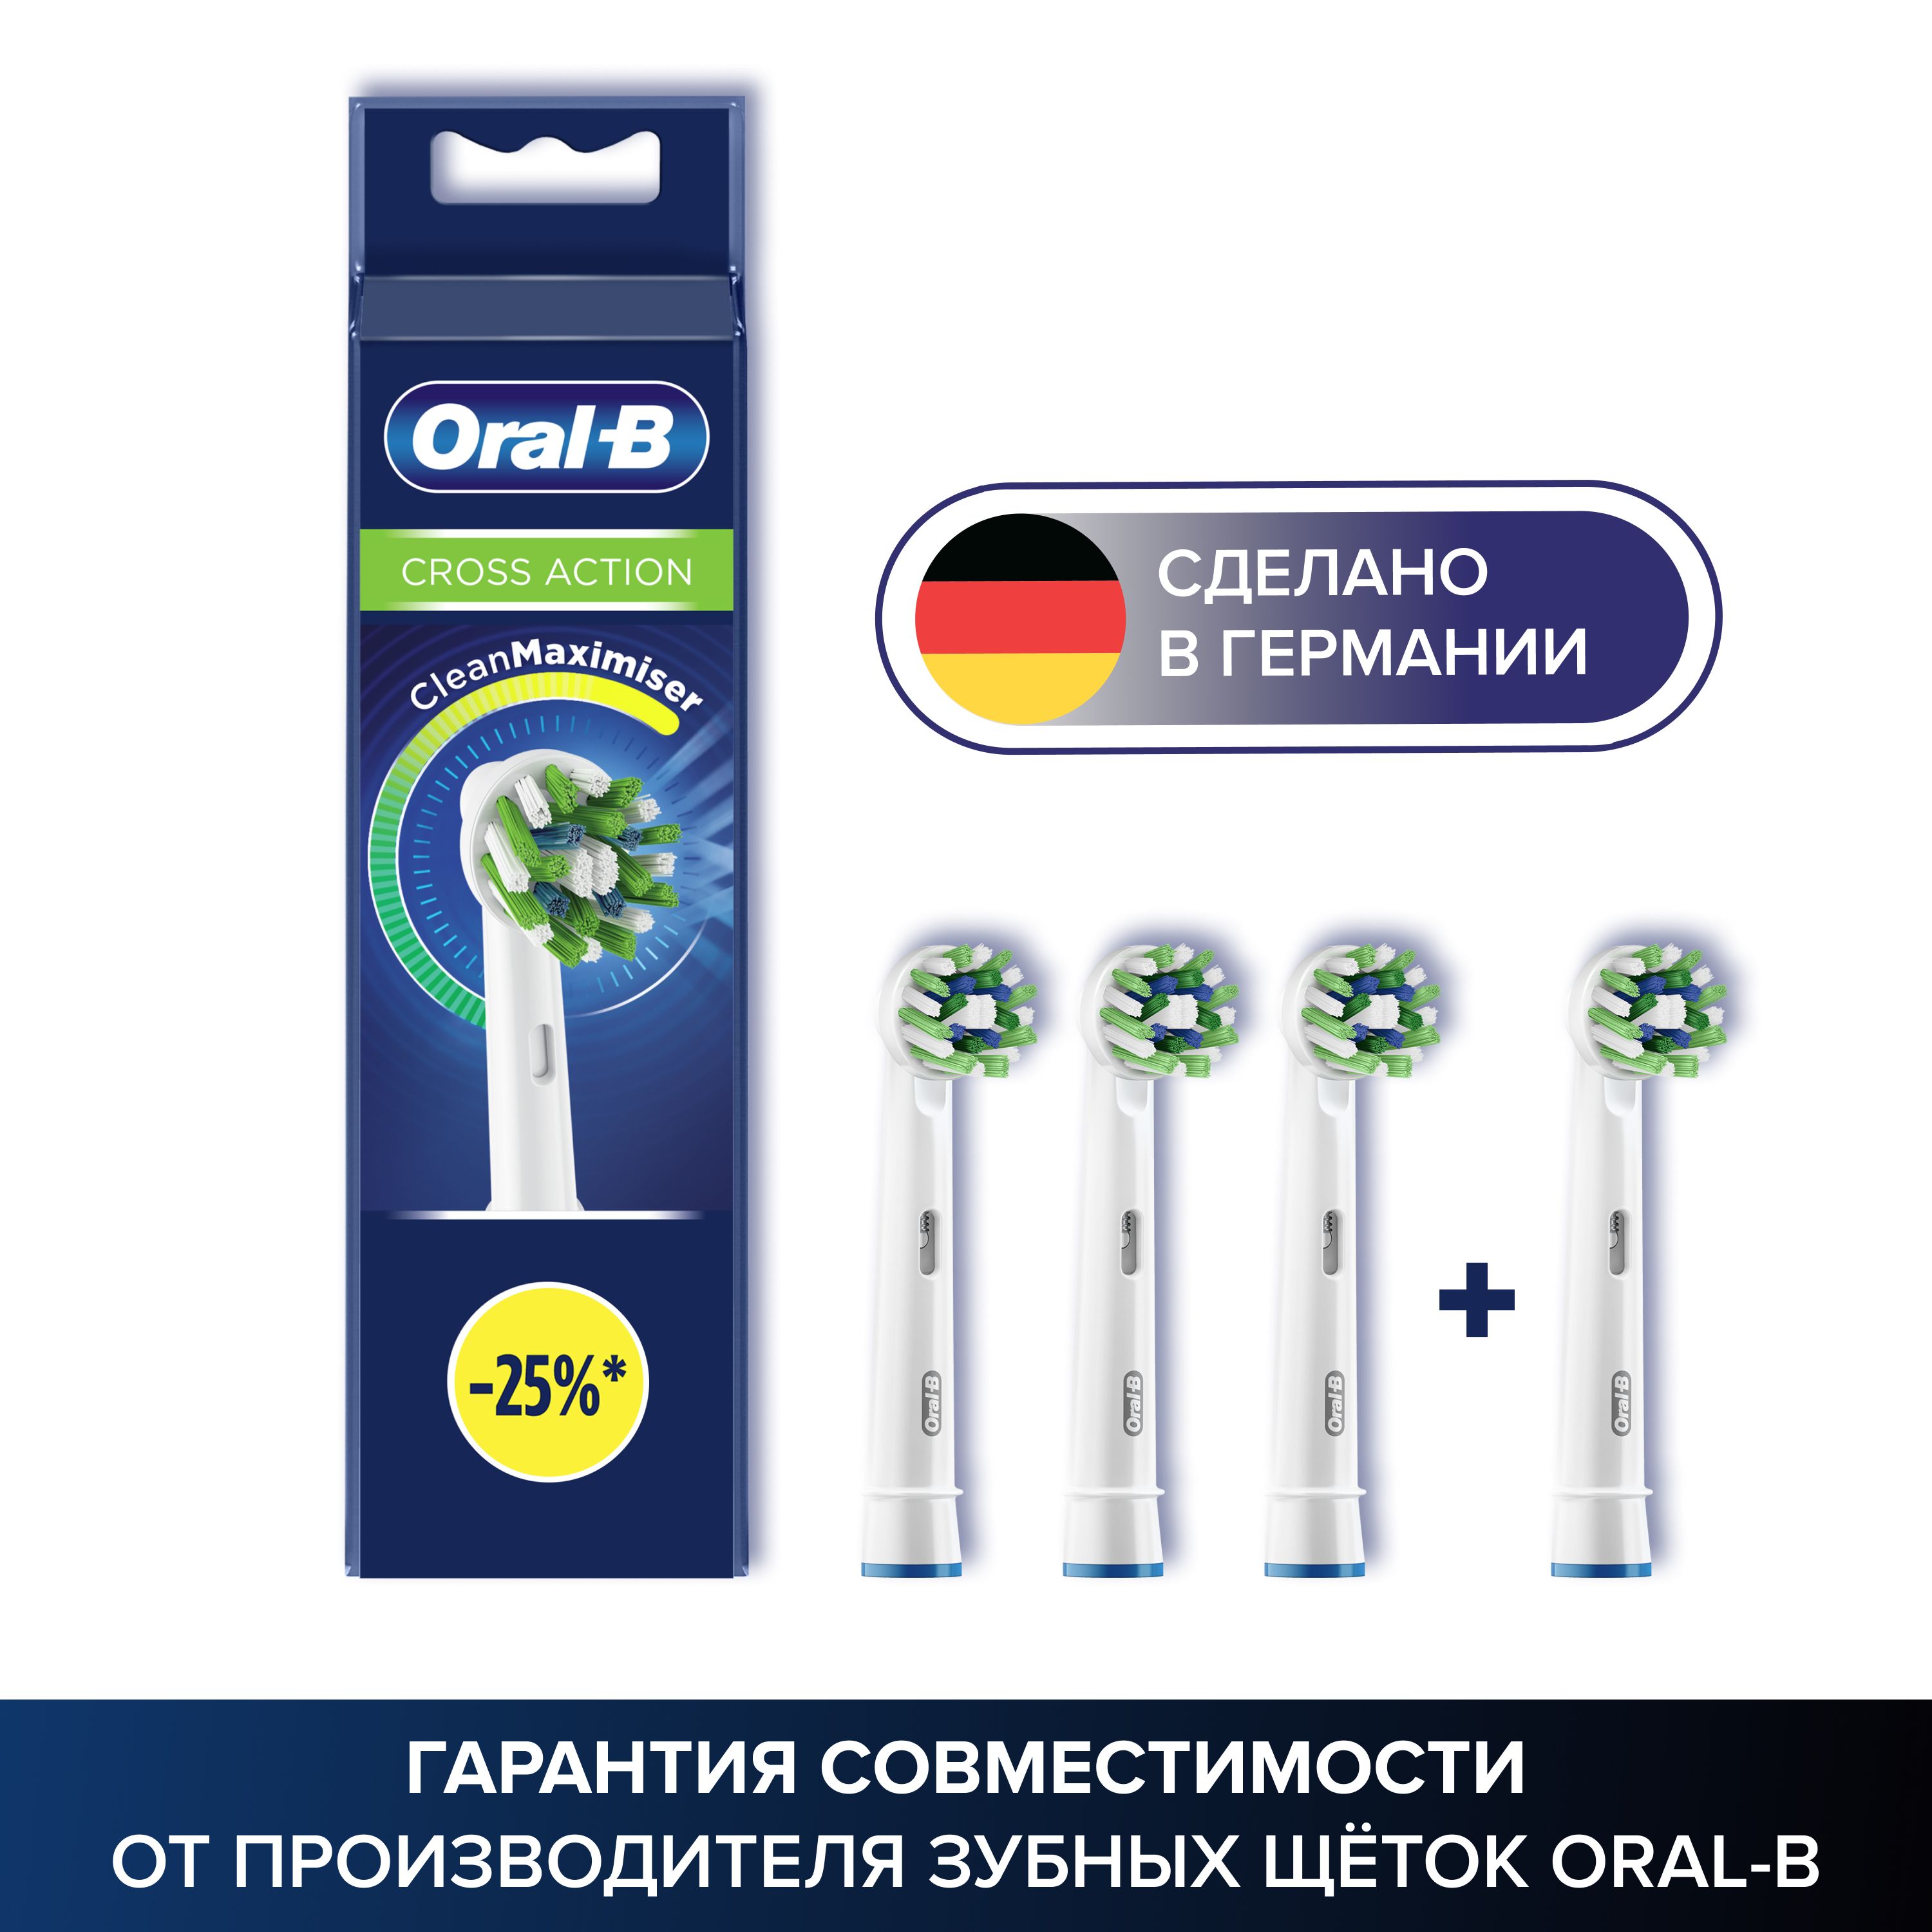 Оригинальные насадки Oral-B Cross Action CleanMaximiser White для электрической зубной щетки, 4 шт., для тщательного удаления налета